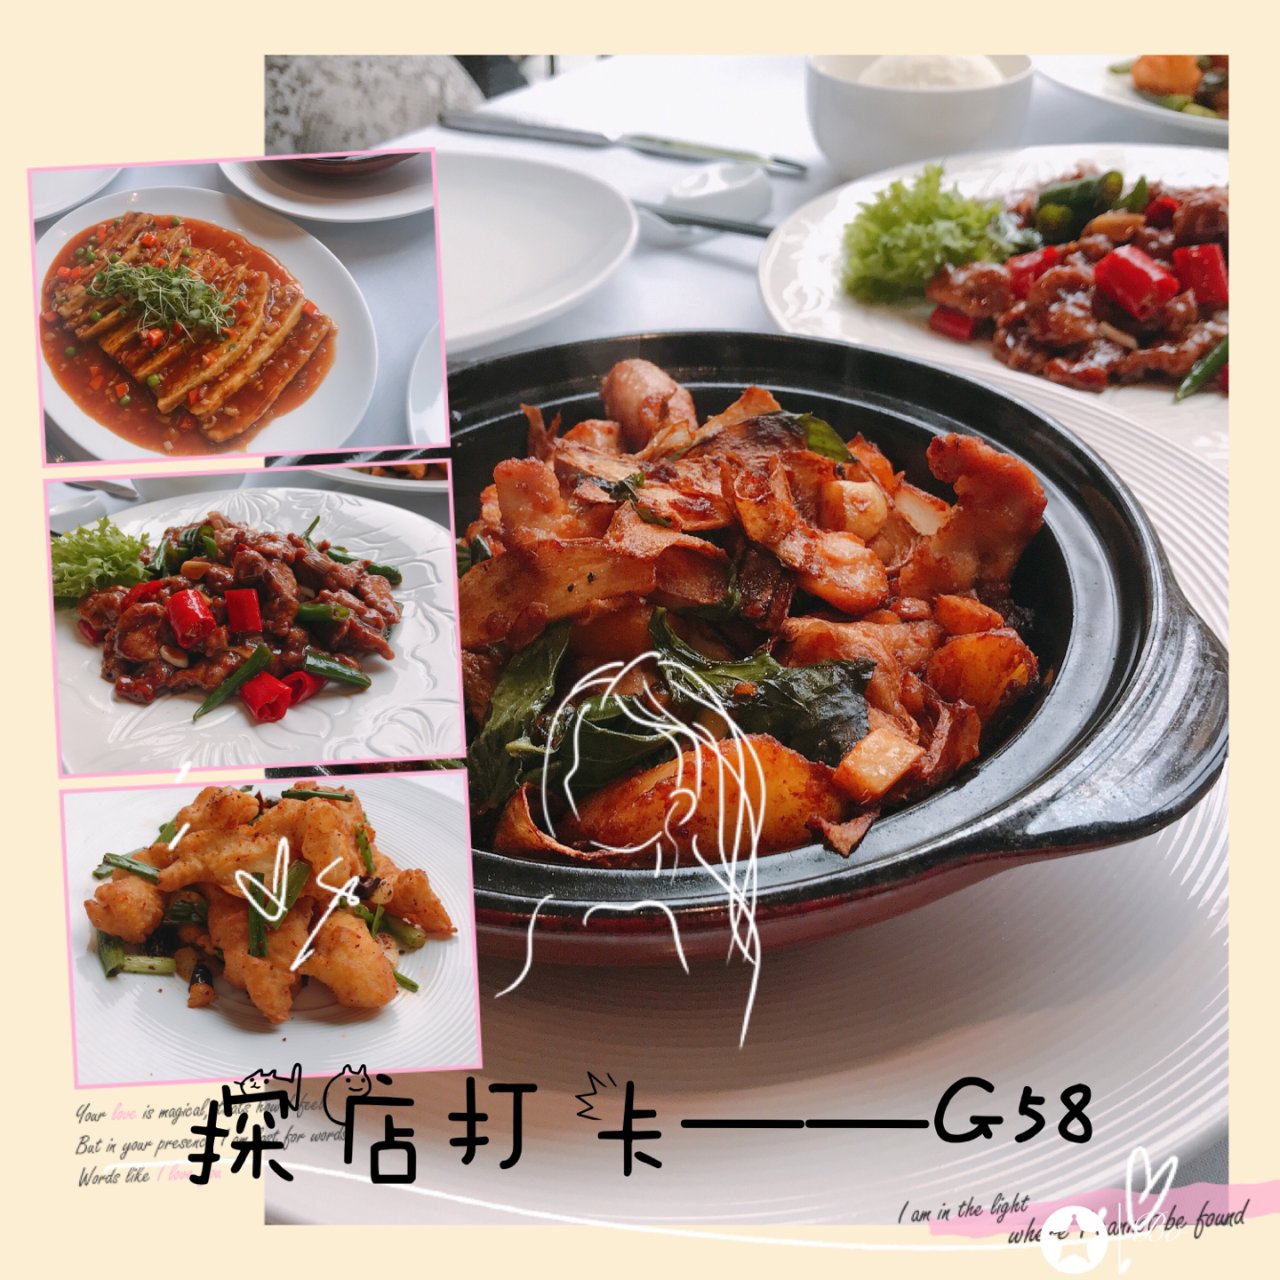 【探店打卡】RTP地区最贵的中餐G58...